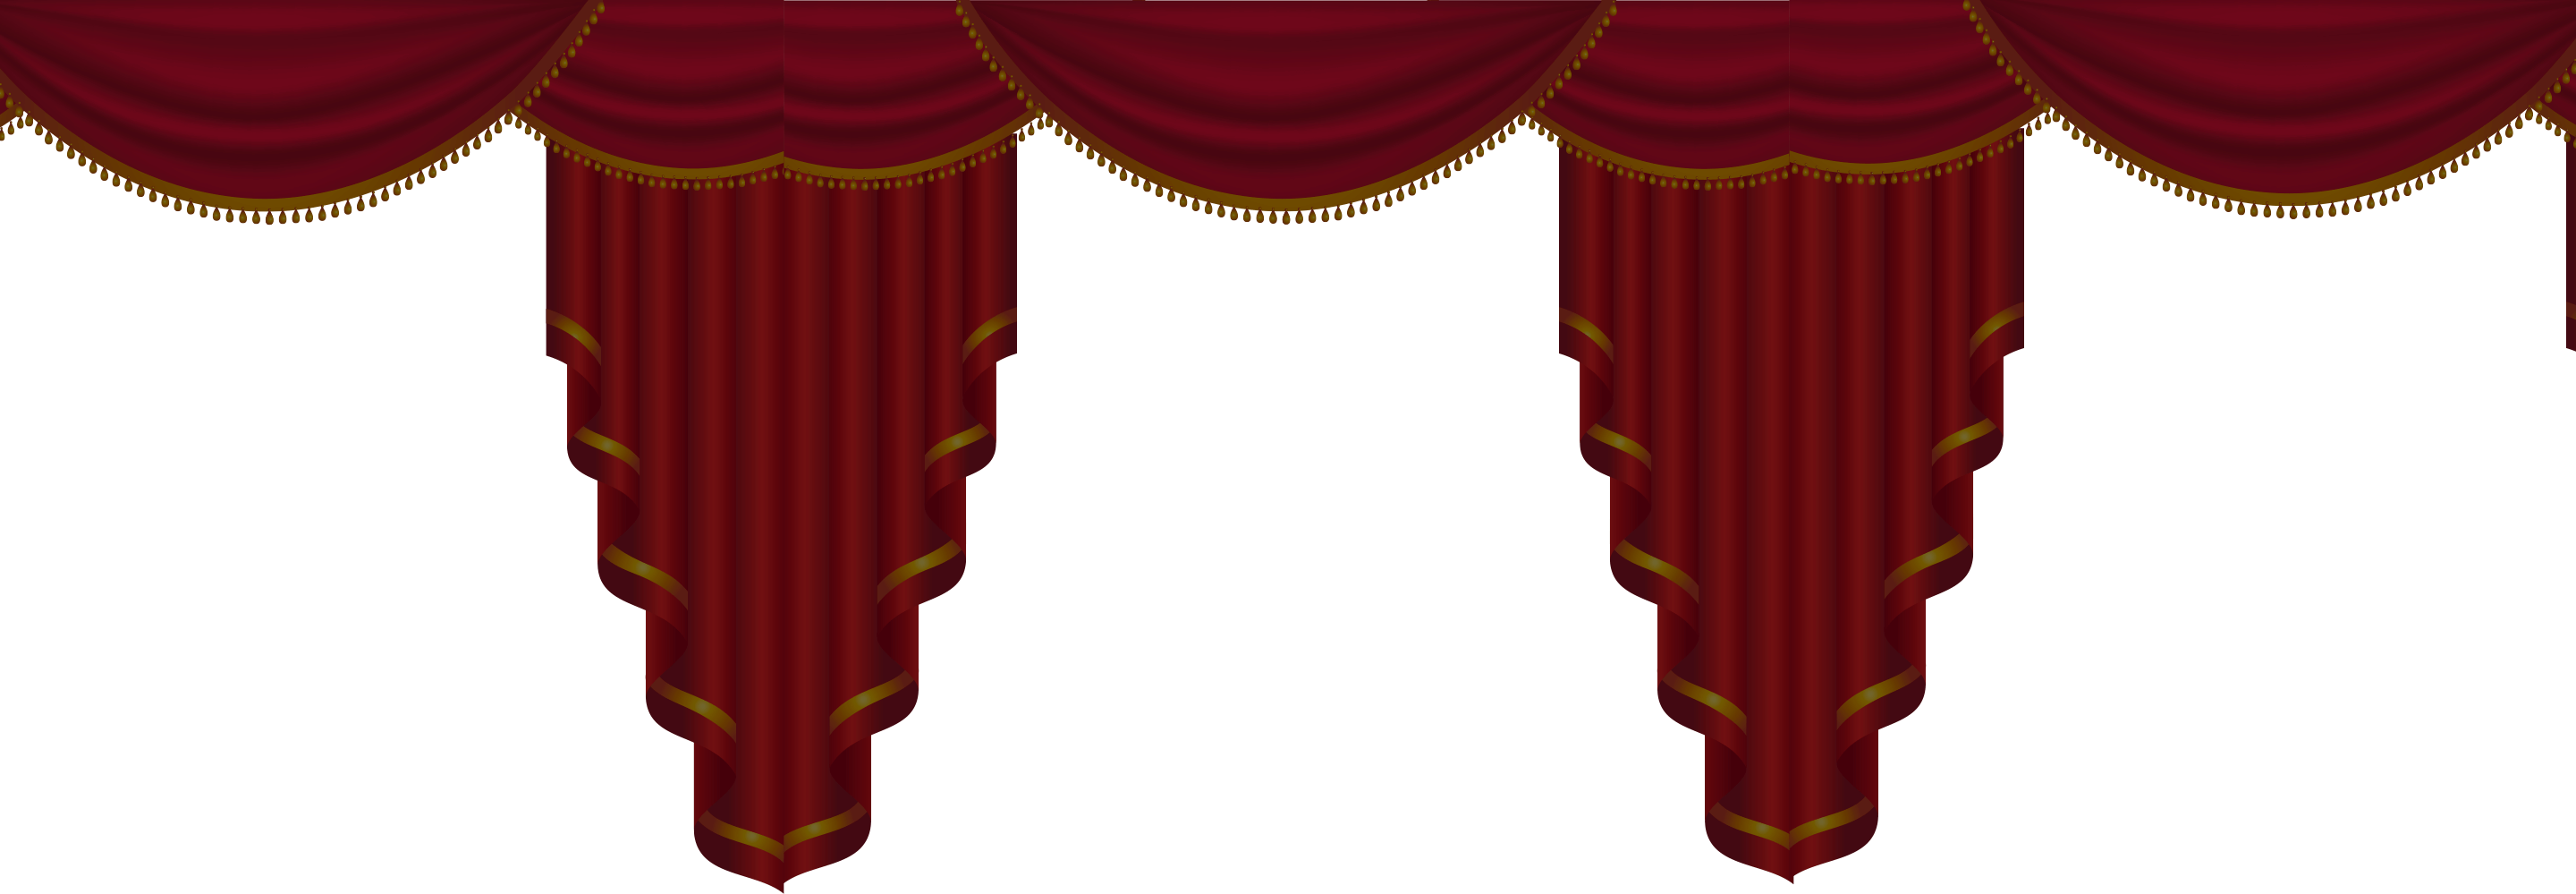 ستارة المسرح PNG صورة شفافة